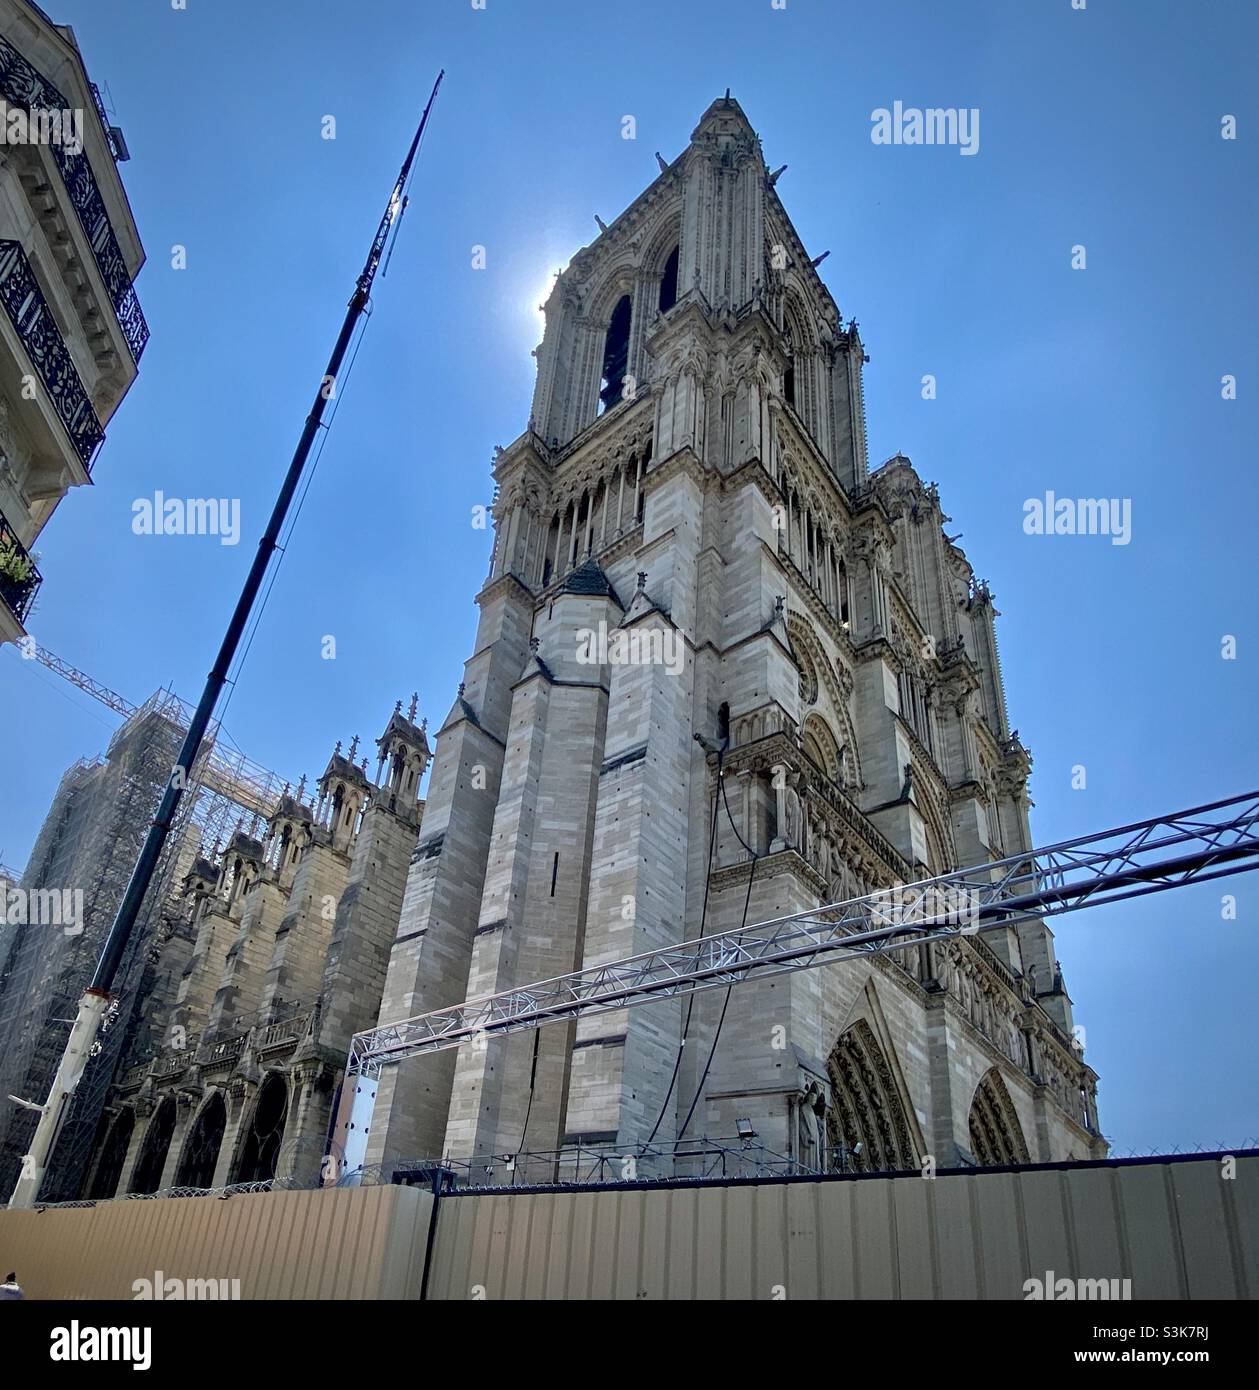 Die Kathedrale Notre-Dame de Paris (Unsere Liebe Frau von Paris) in Paris, Frankreich, wird nach dem katastrophalen Brand von 2019 repariert/renoviert Stockfoto